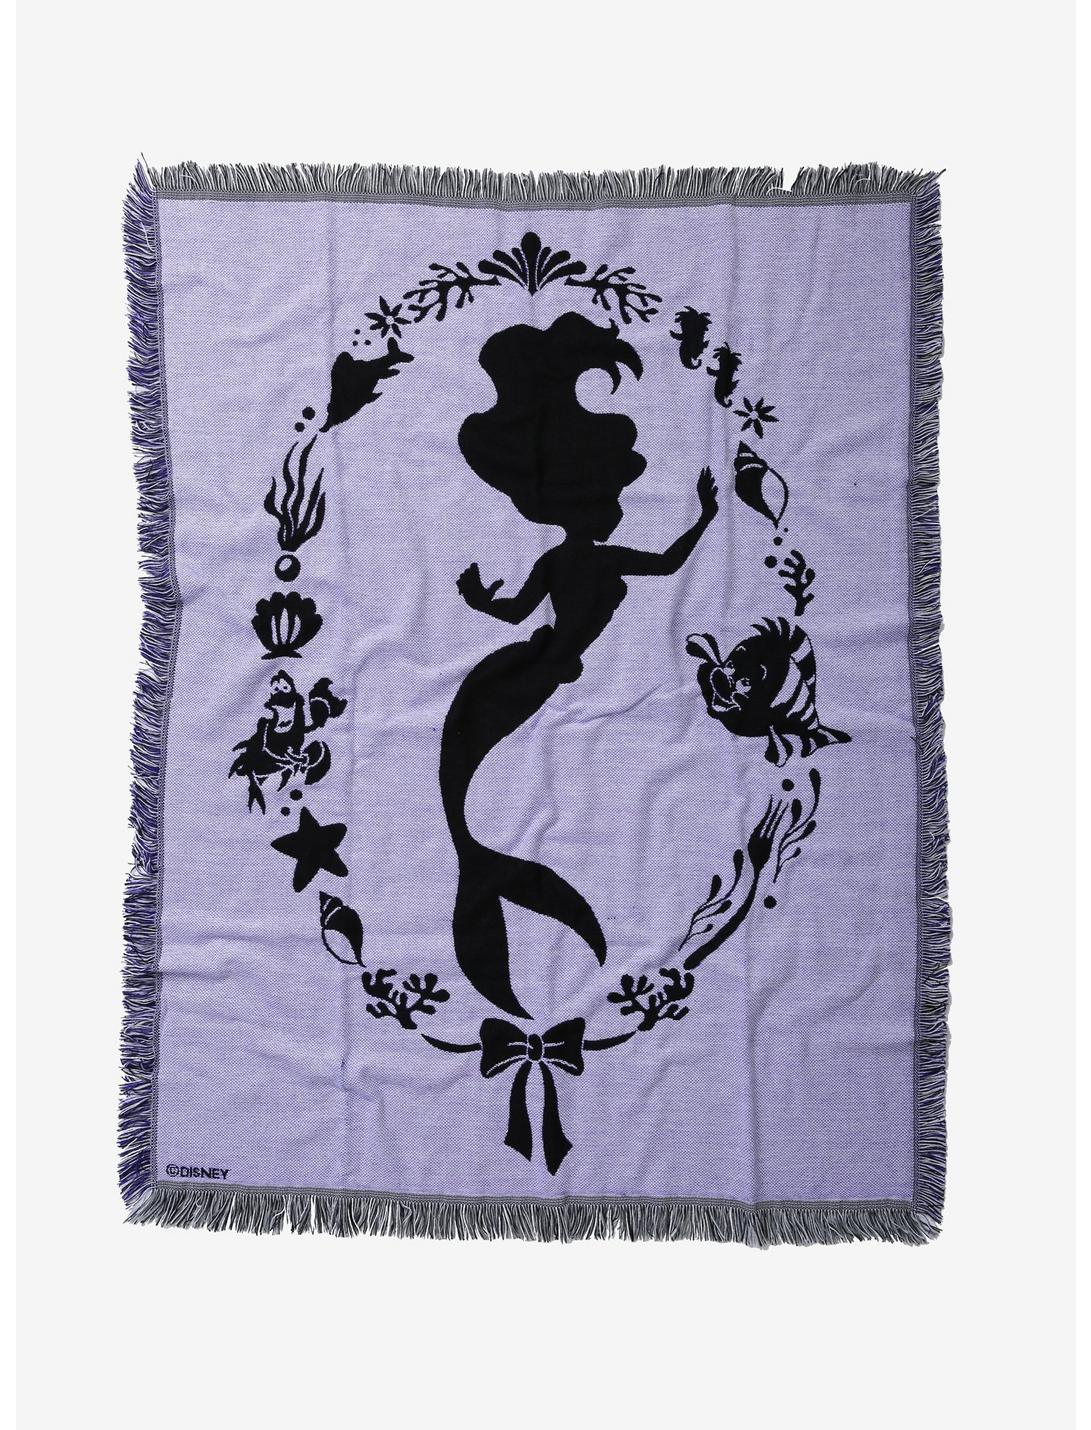 Disney The Little Mermaid Ariel Silhouette Tapestry Throw Blanket, , hi-res